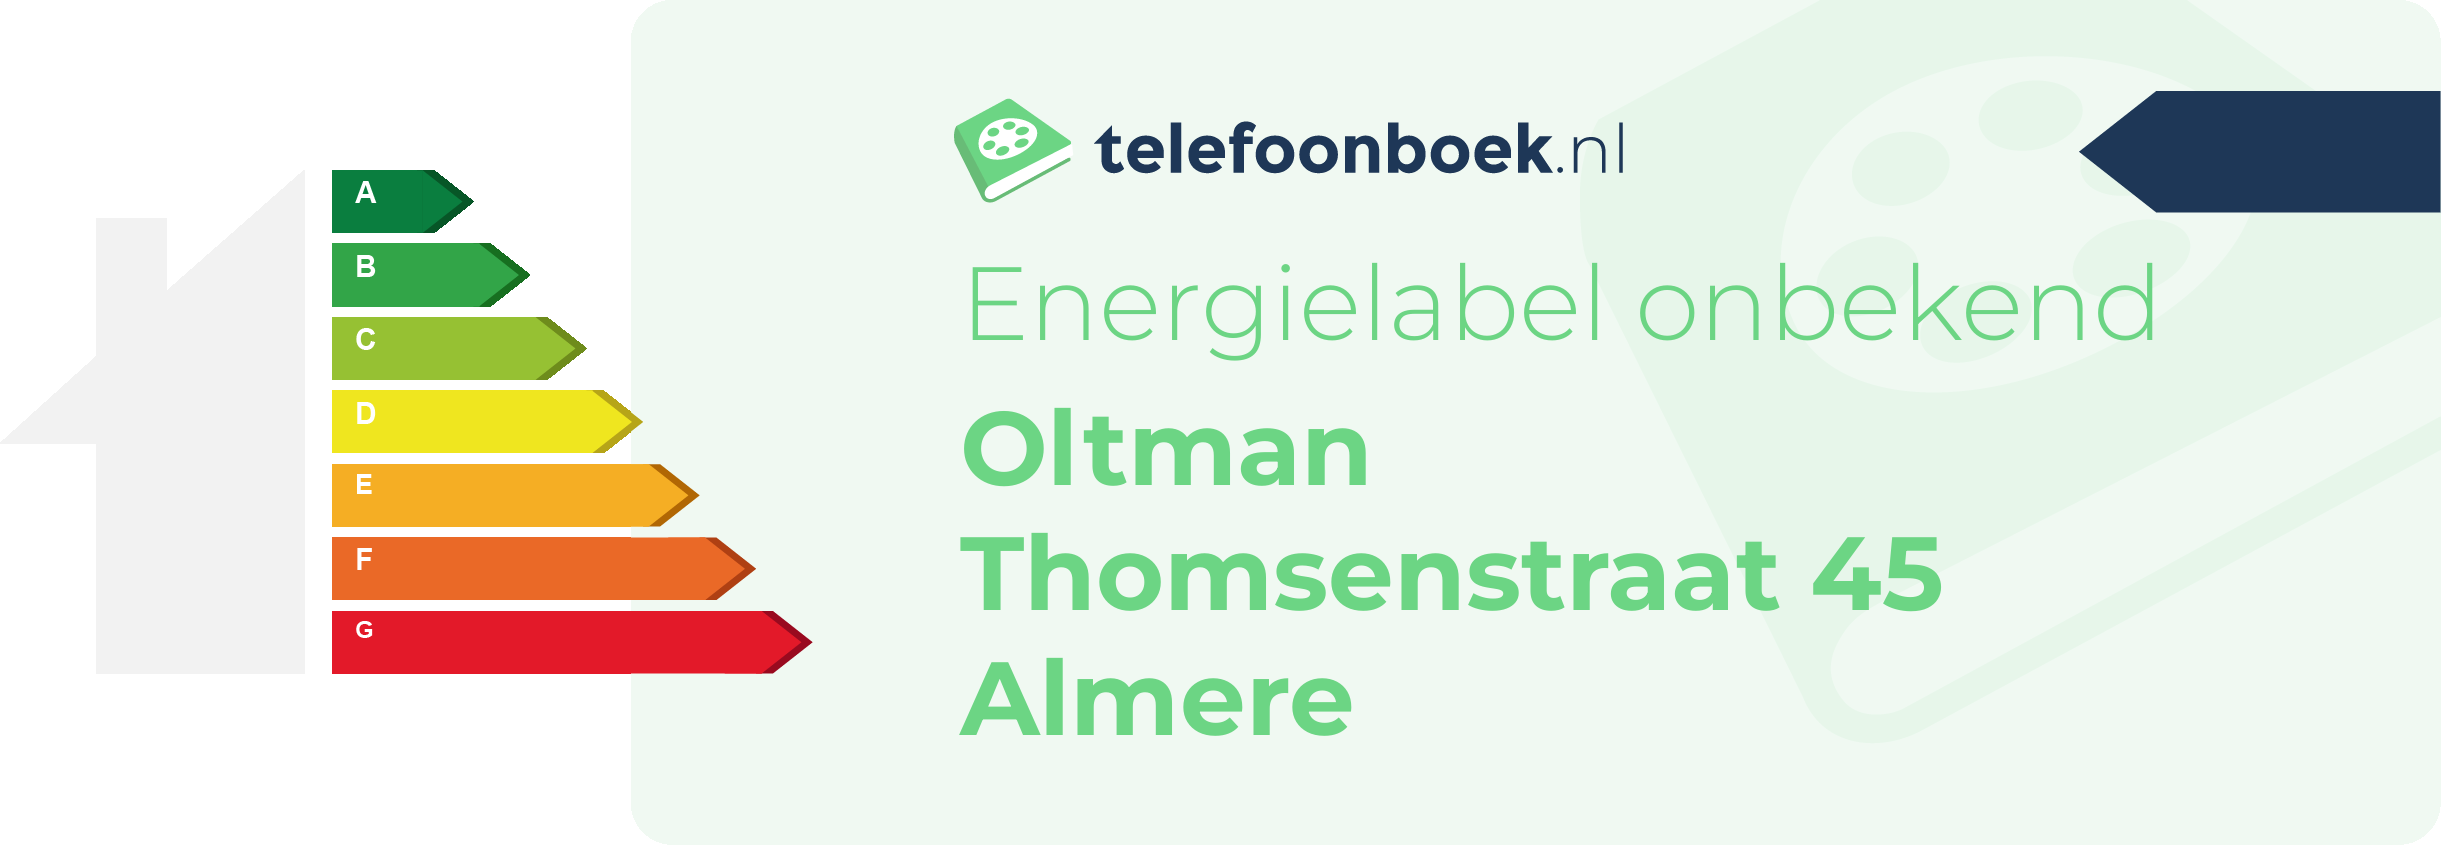 Energielabel Oltman Thomsenstraat 45 Almere